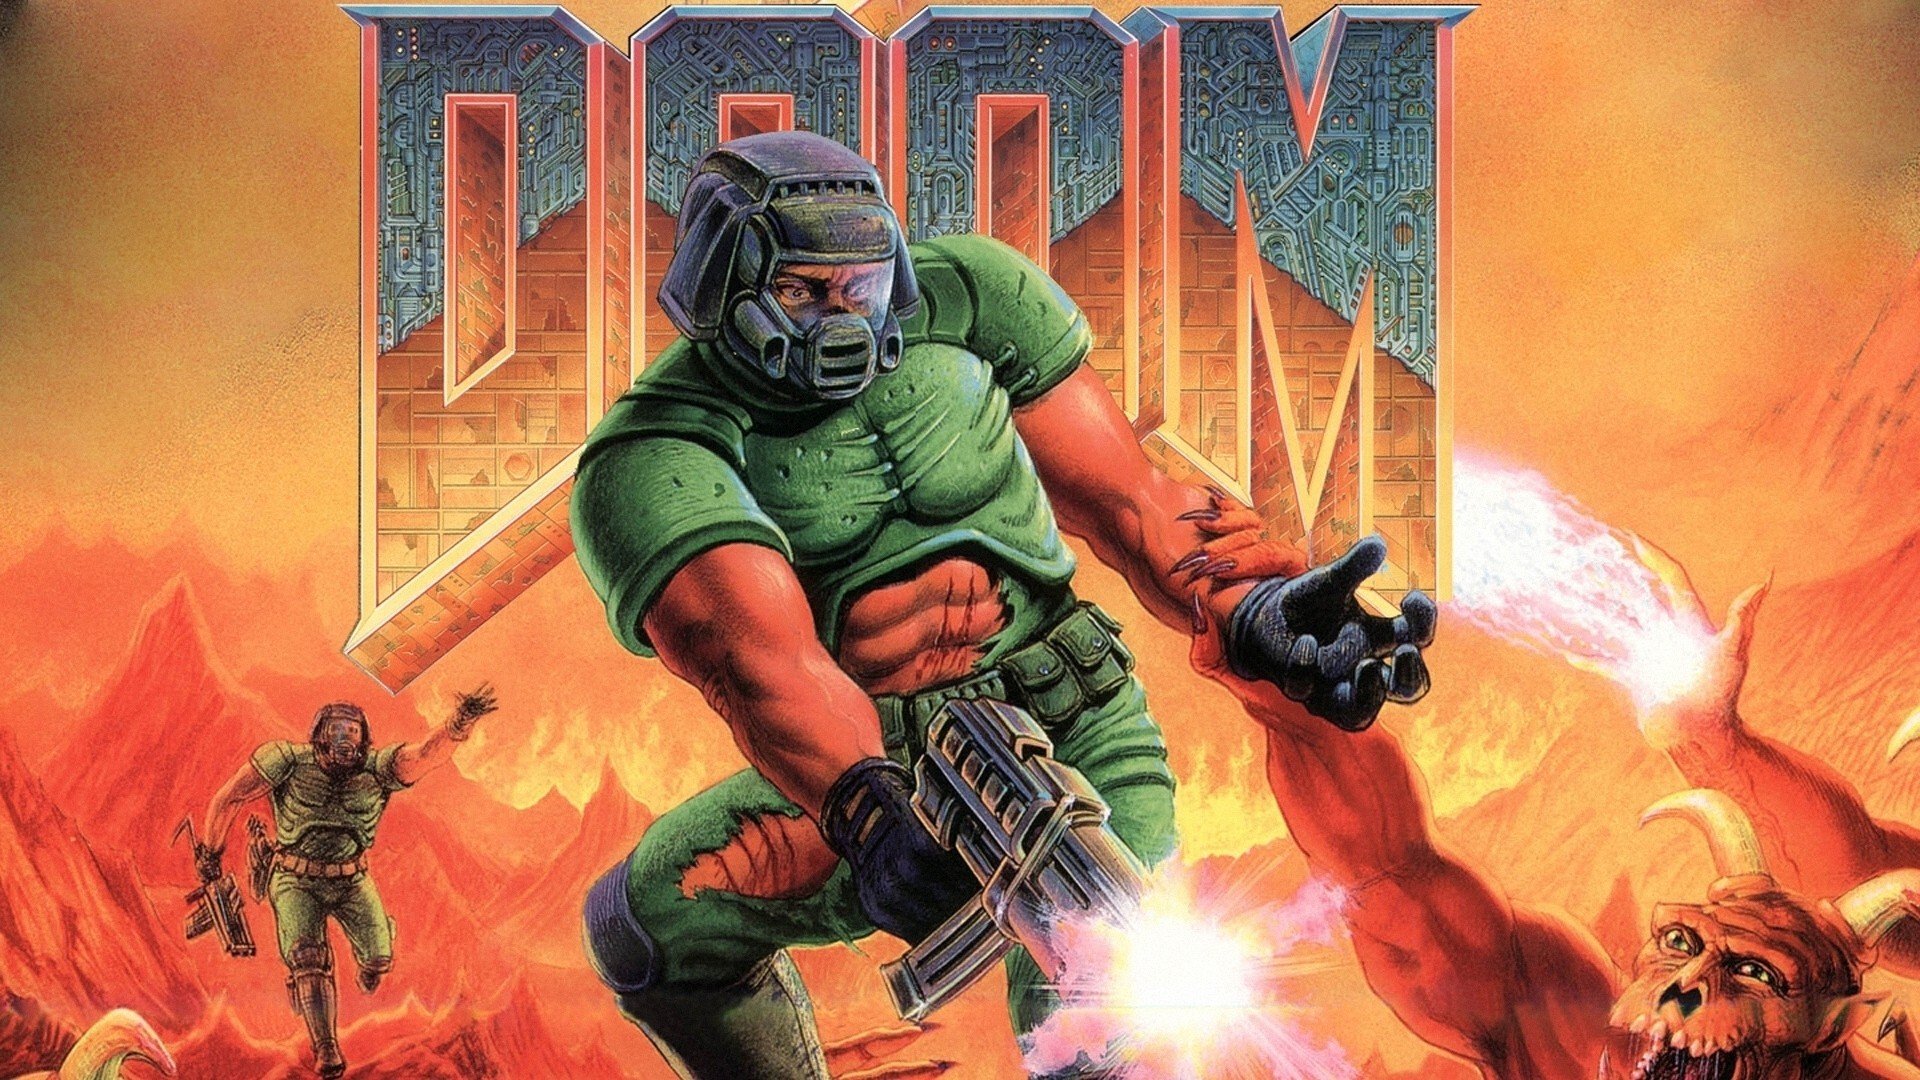 Doom (game) Wallpaper